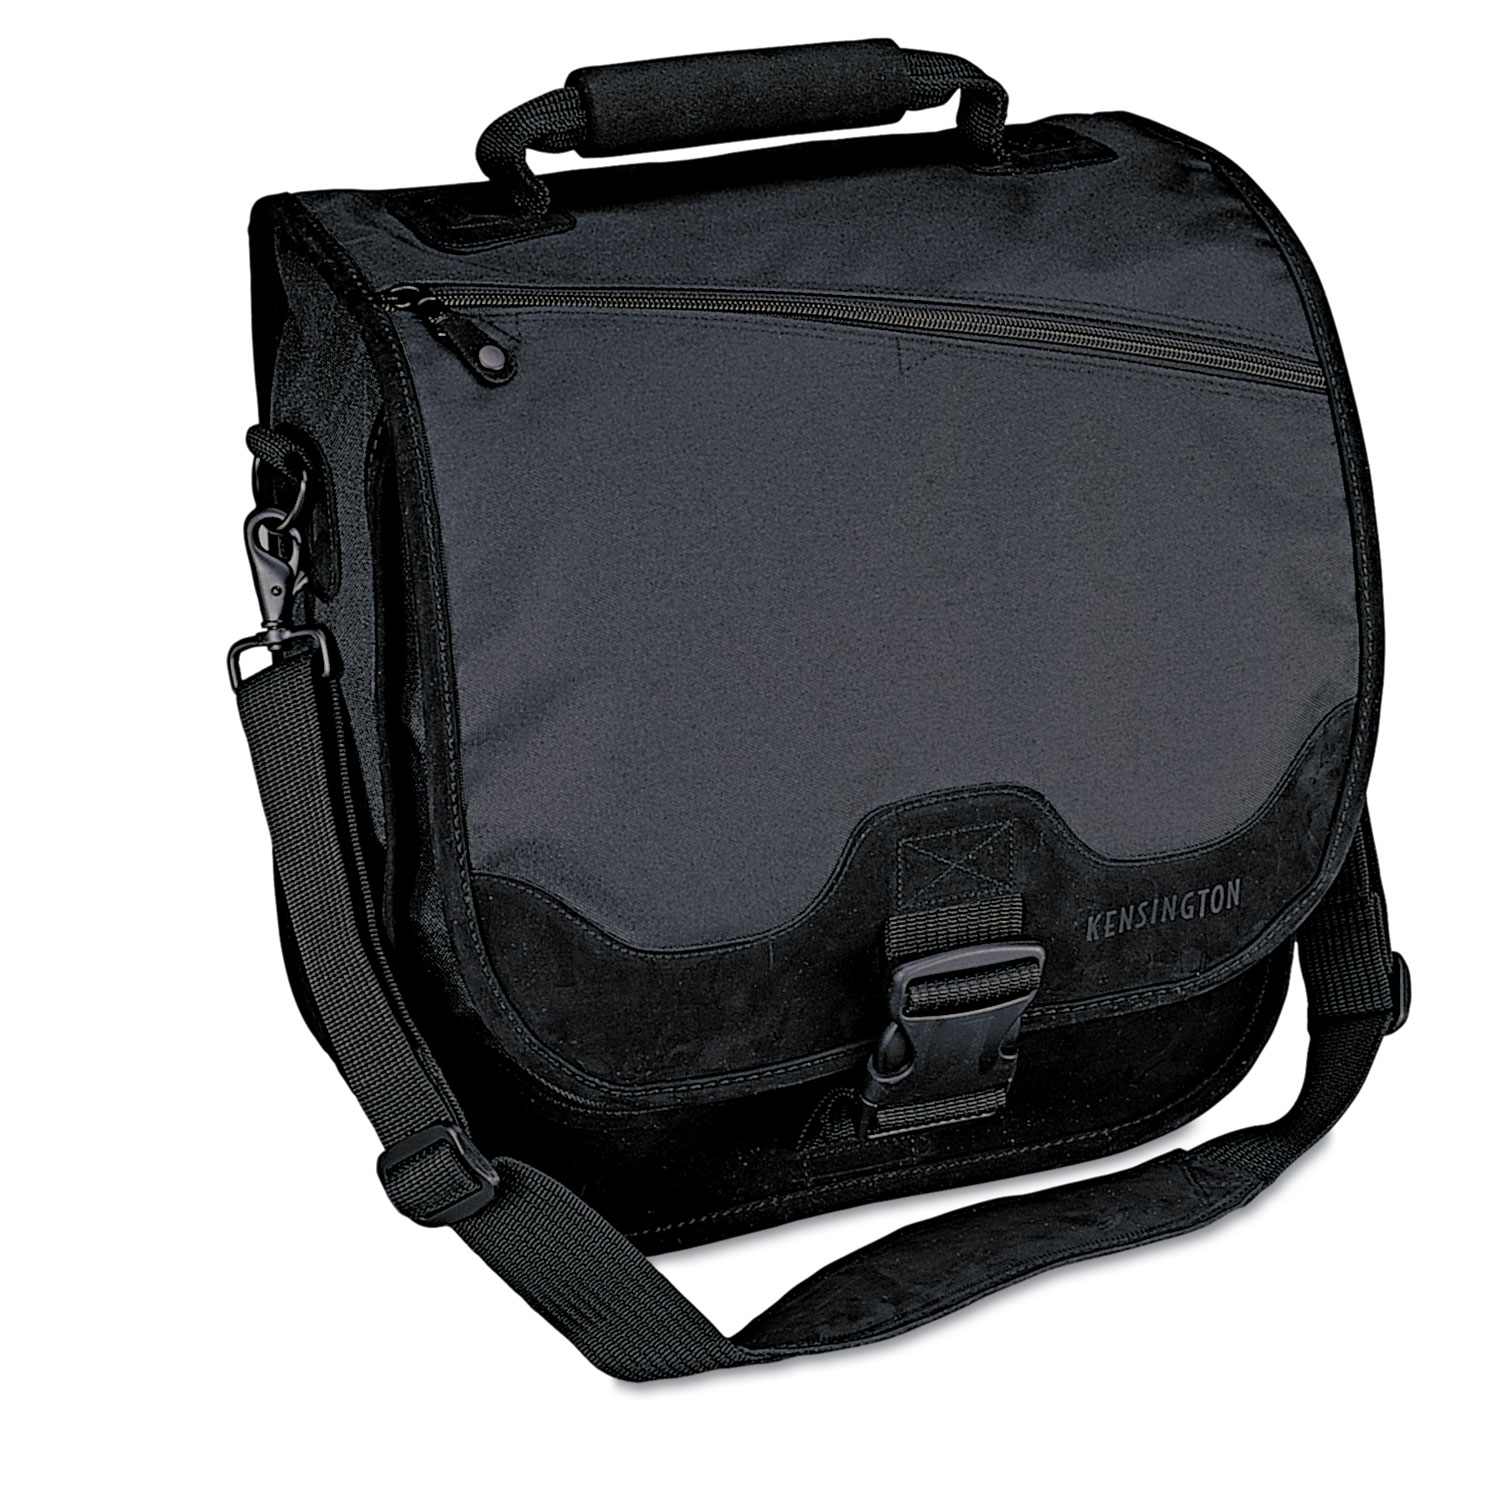 SaddleBag Laptop Carrying Case, 14-1/4 x 6-1/2 x 16-1/2, Black